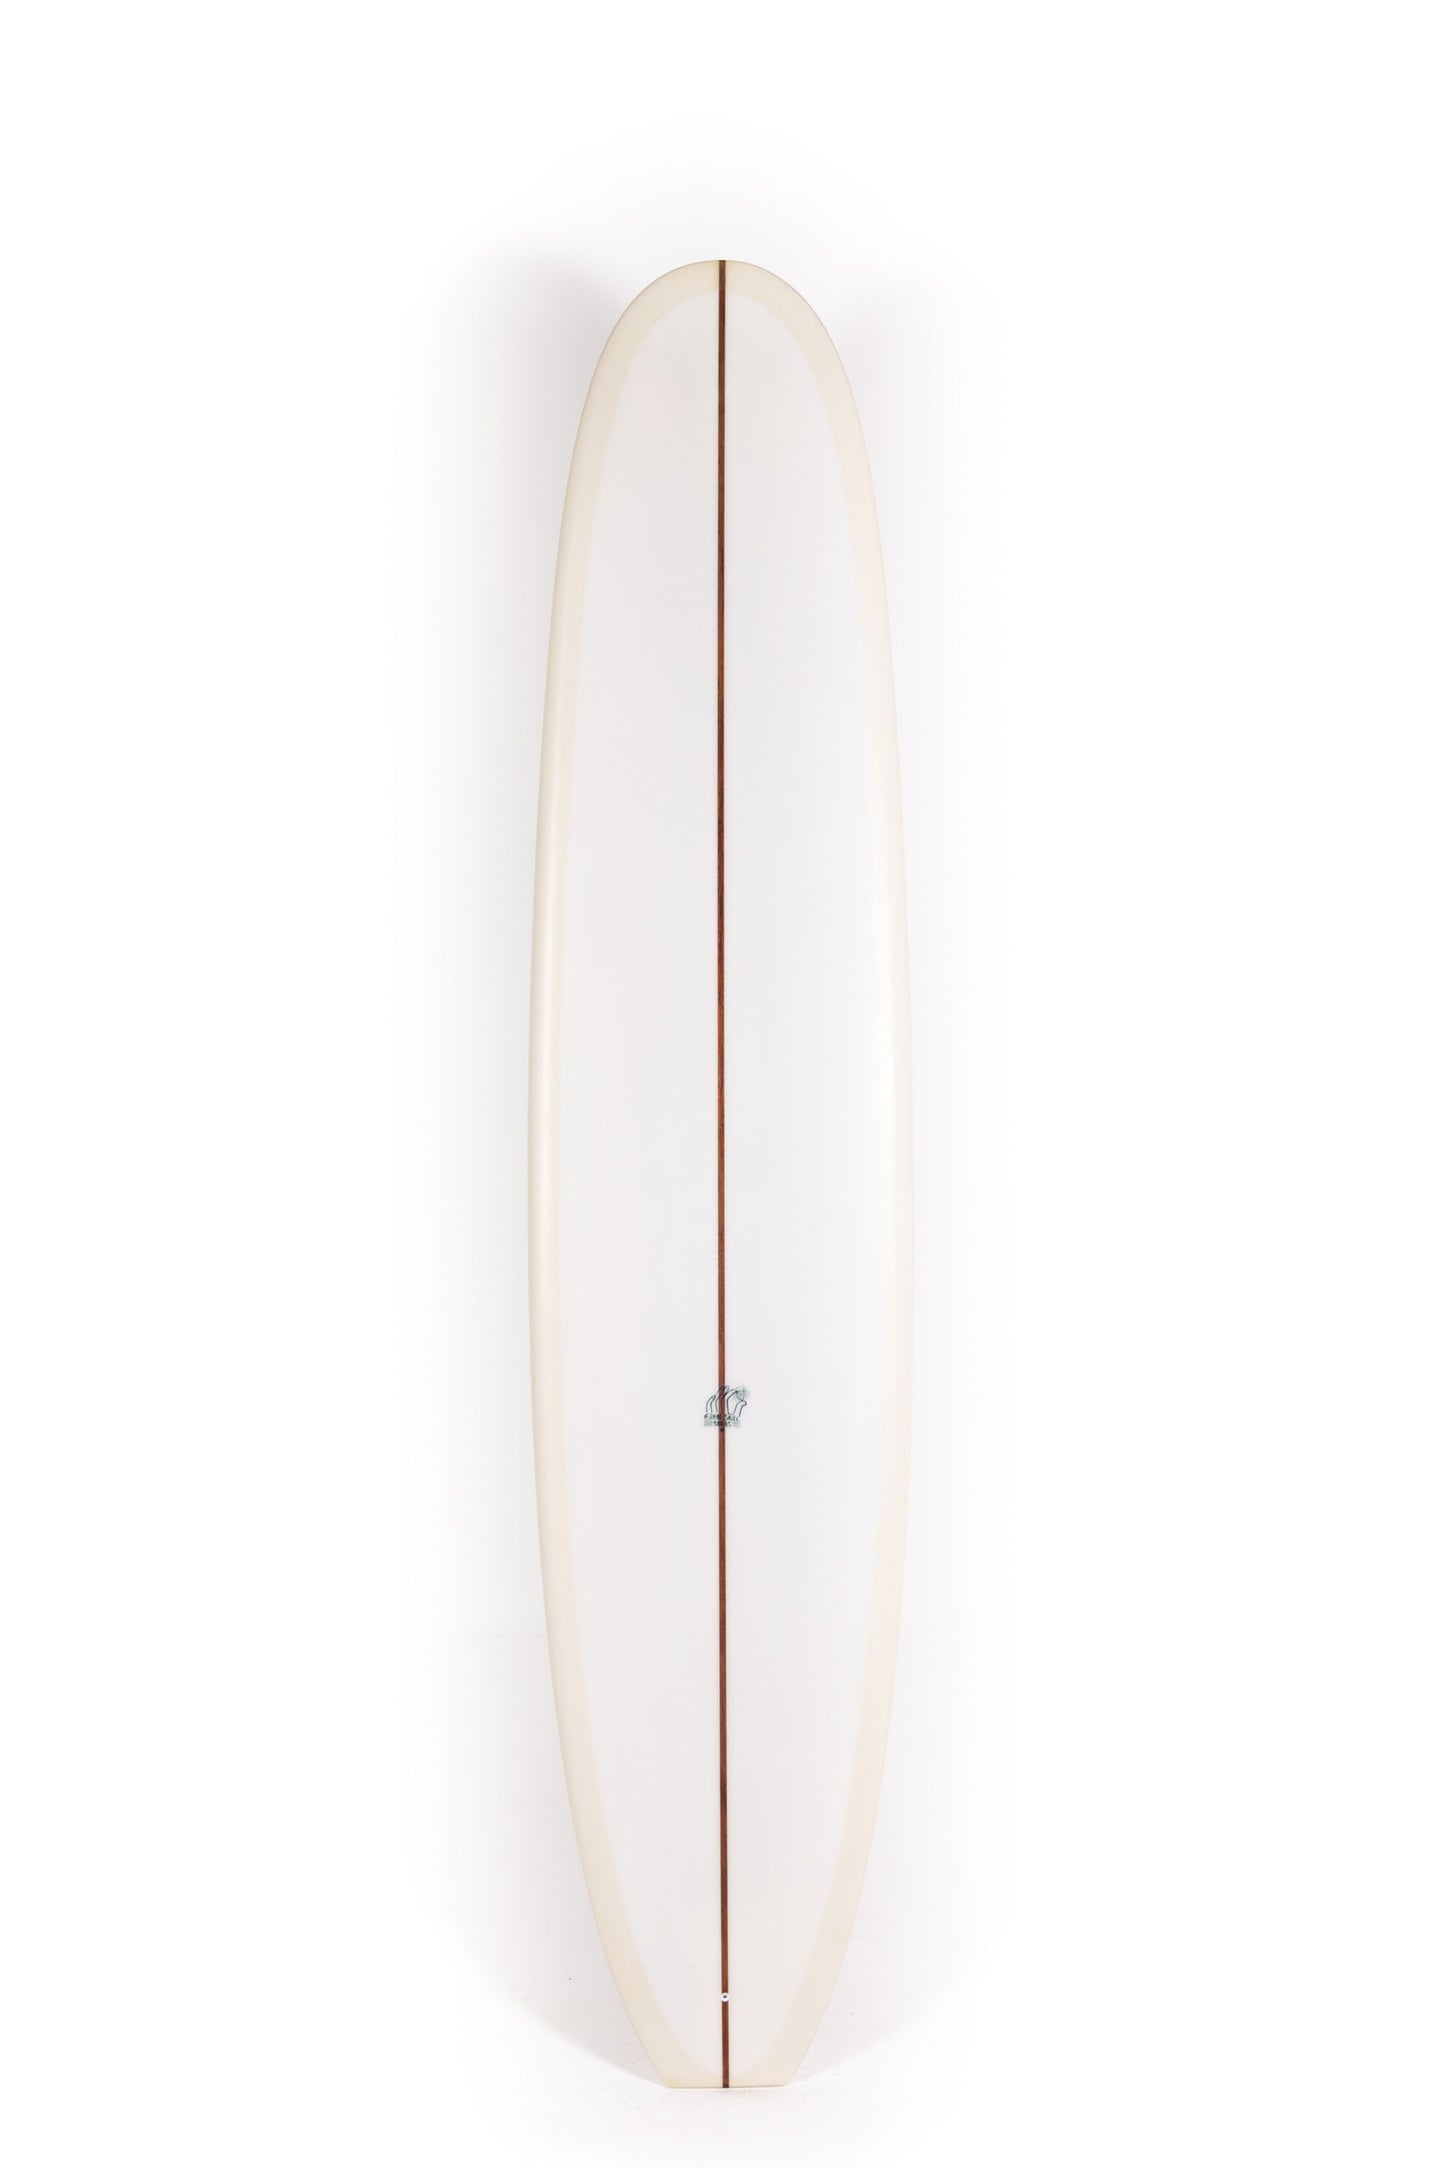 Pukas-Surf-Shop-Dead-Kooks-Surfboards-Kassia-8_1-0